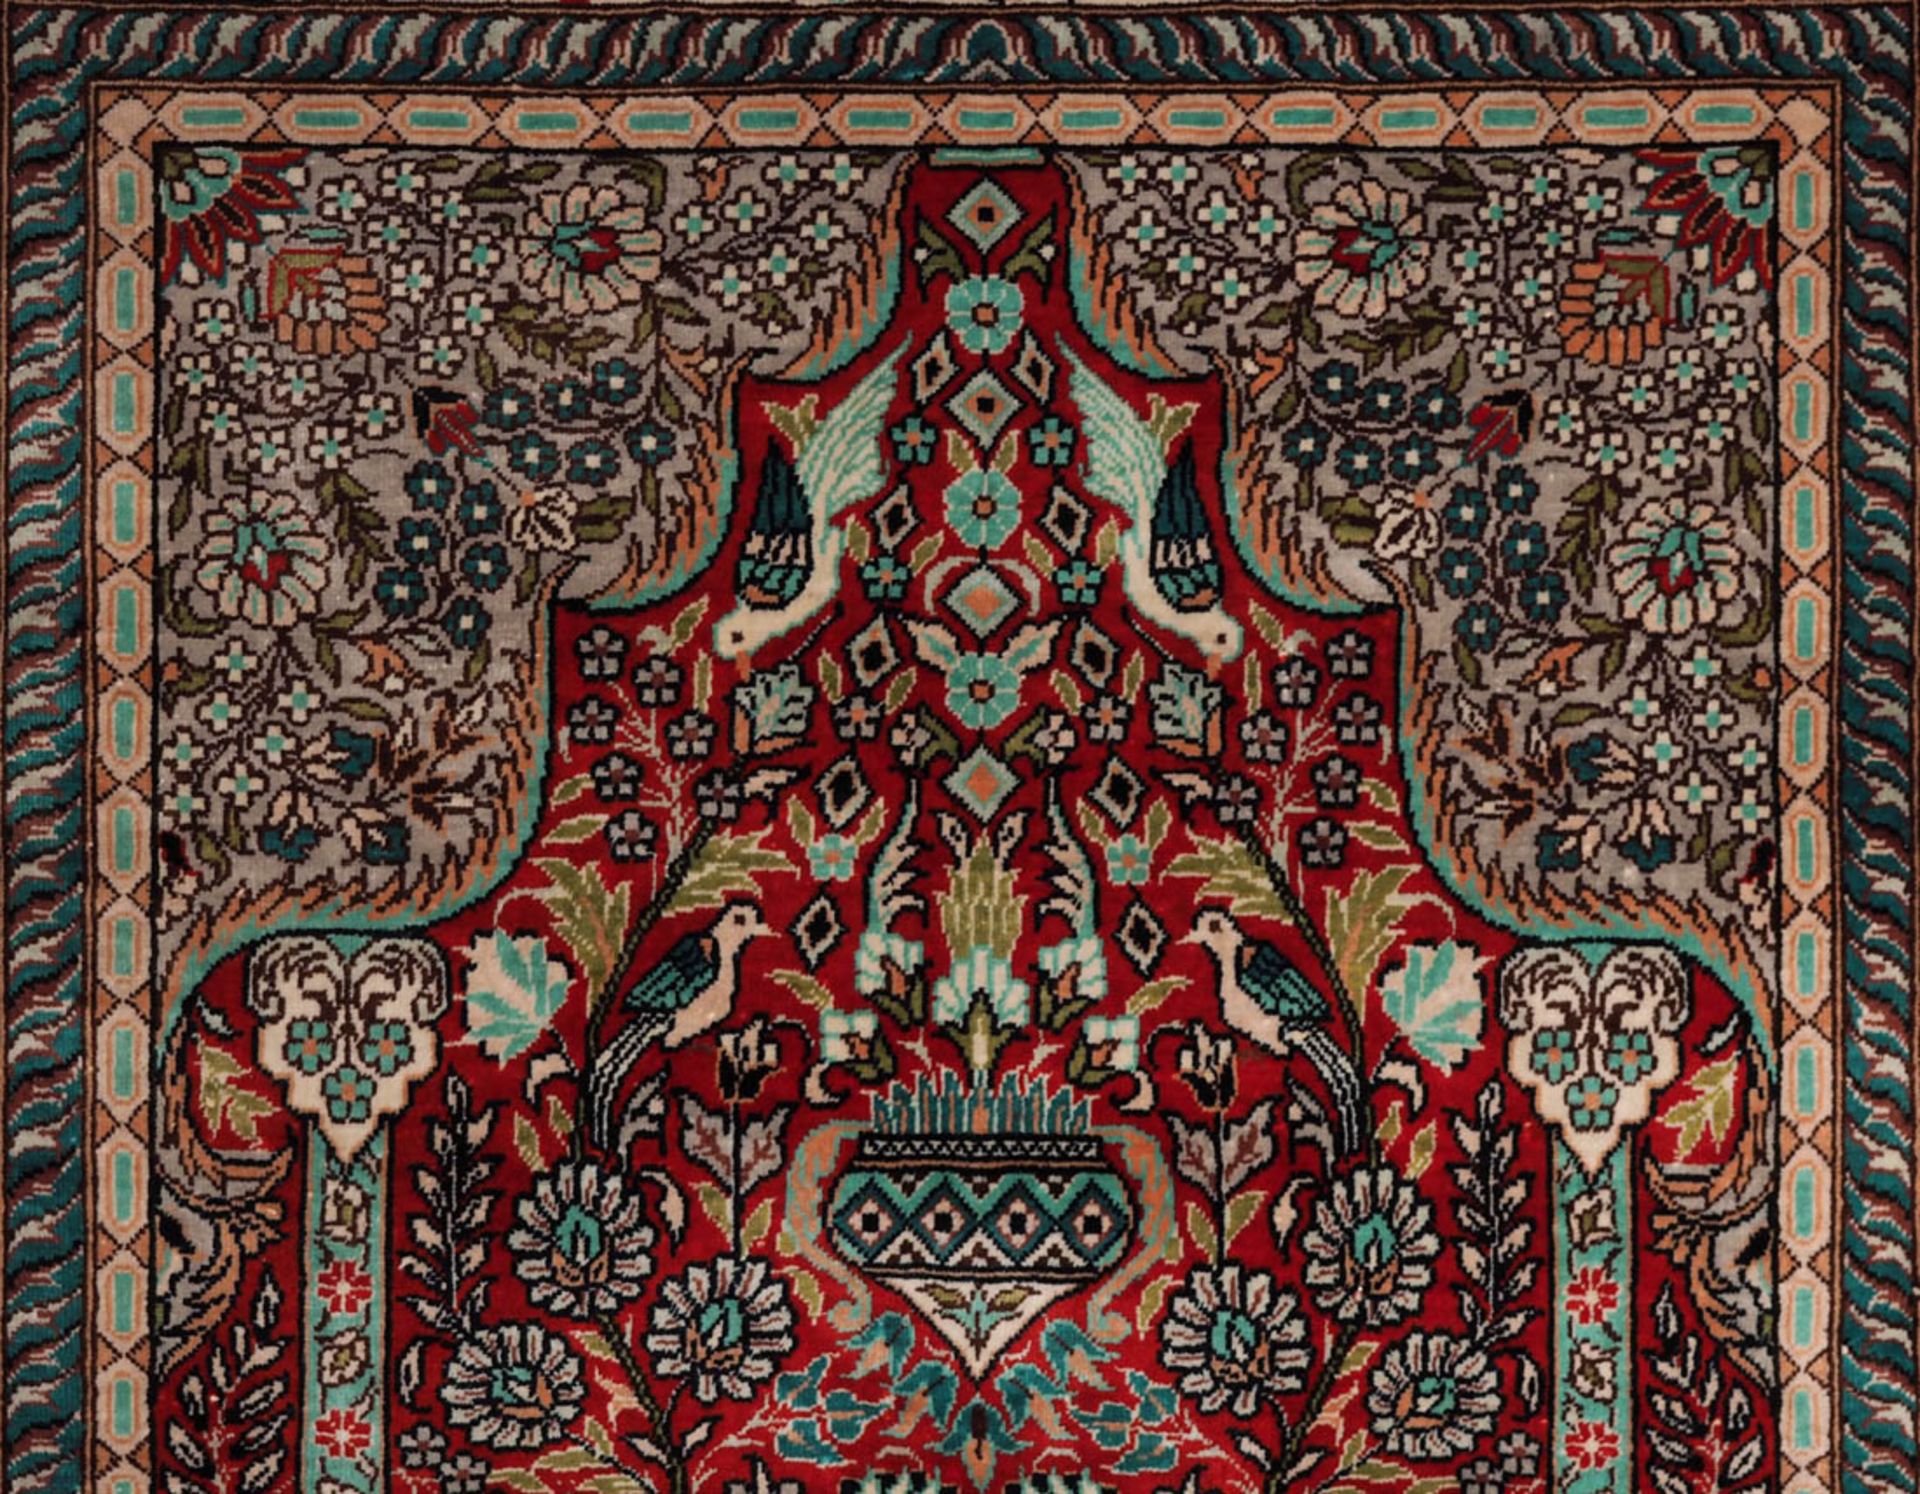 Gebetsteppich Mihrab mit Vase, Ampel und zahlreichen Tierdarstellungen. Floral durchgemusterte - Bild 3 aus 3